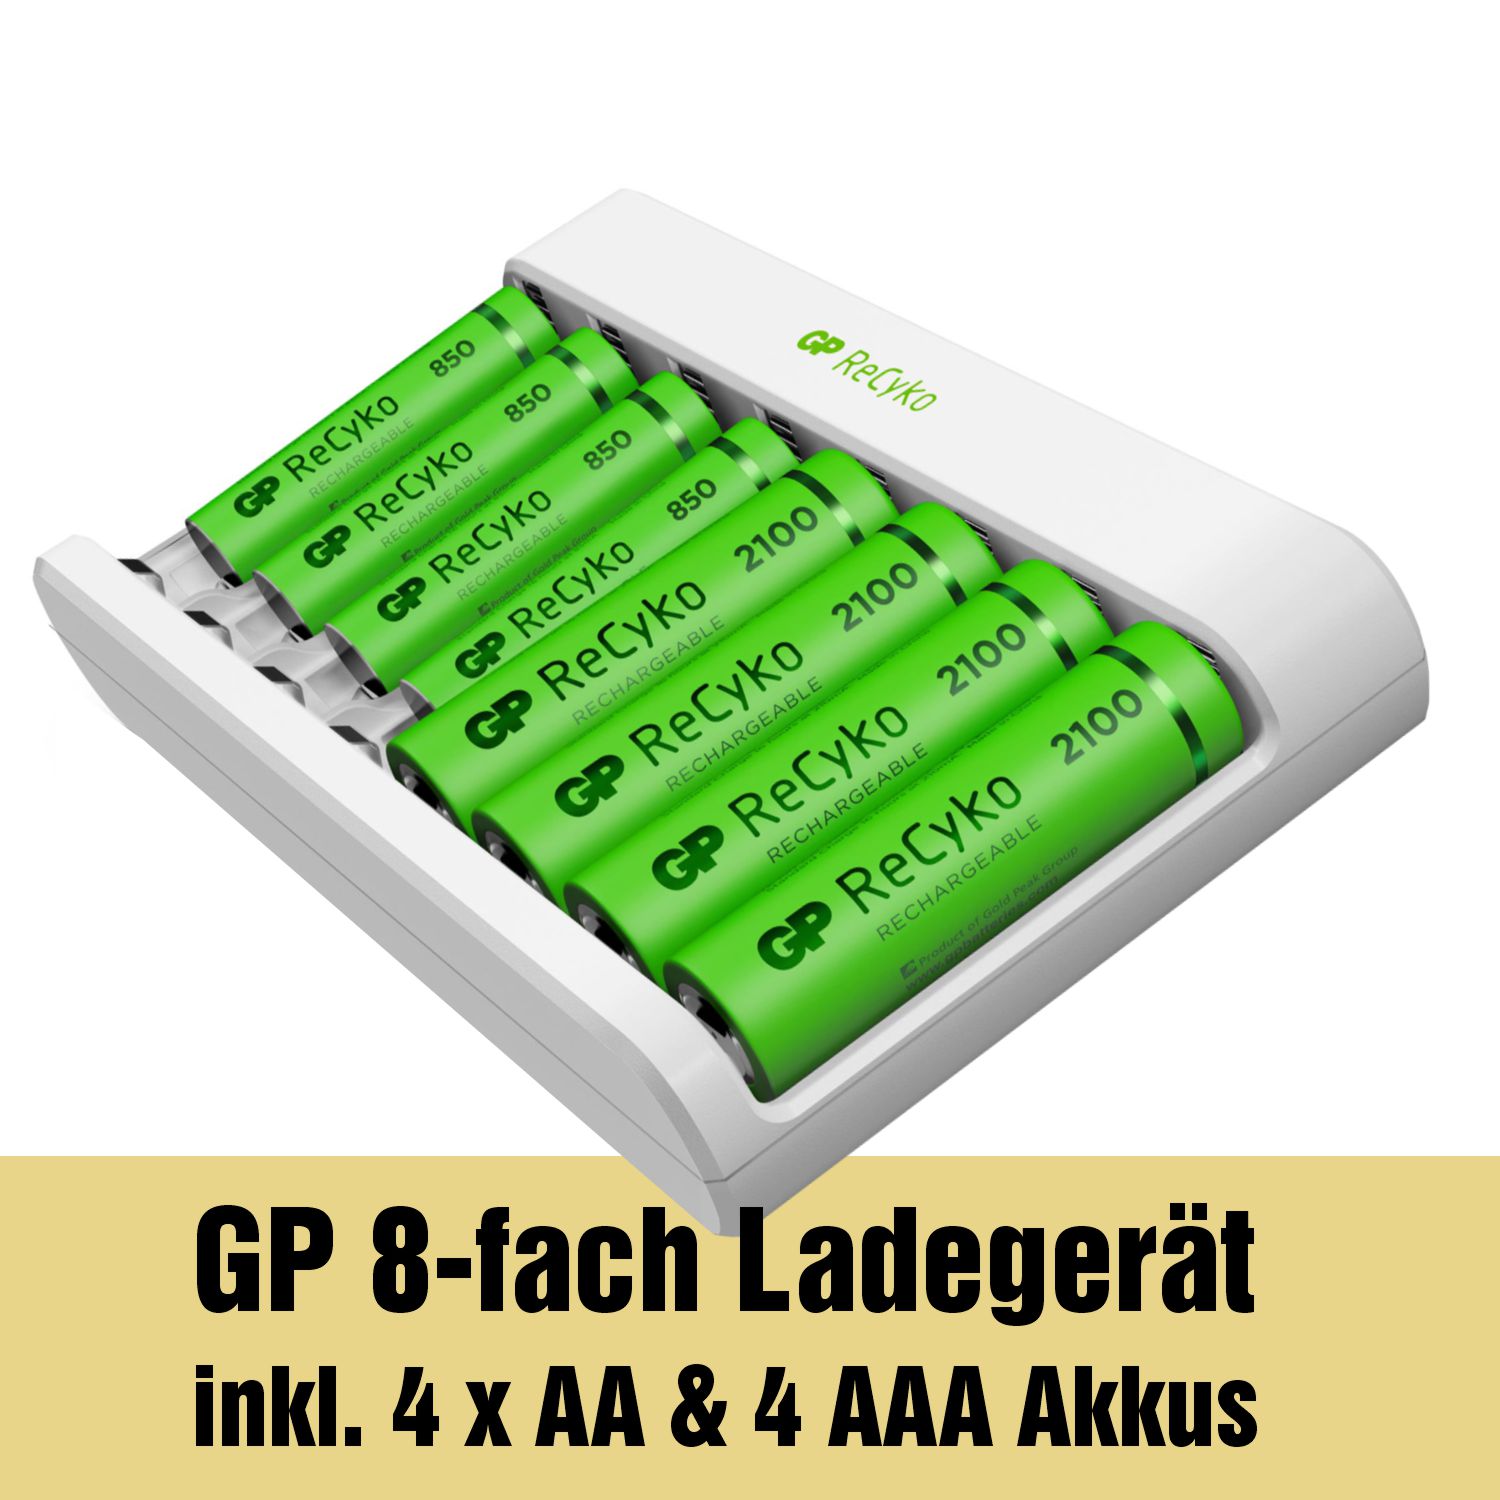 USB Akkuladegerät (8-Fach) inkl. 4x AA 2100mAh & 4x AAA 850mAh ReCyko Akkus